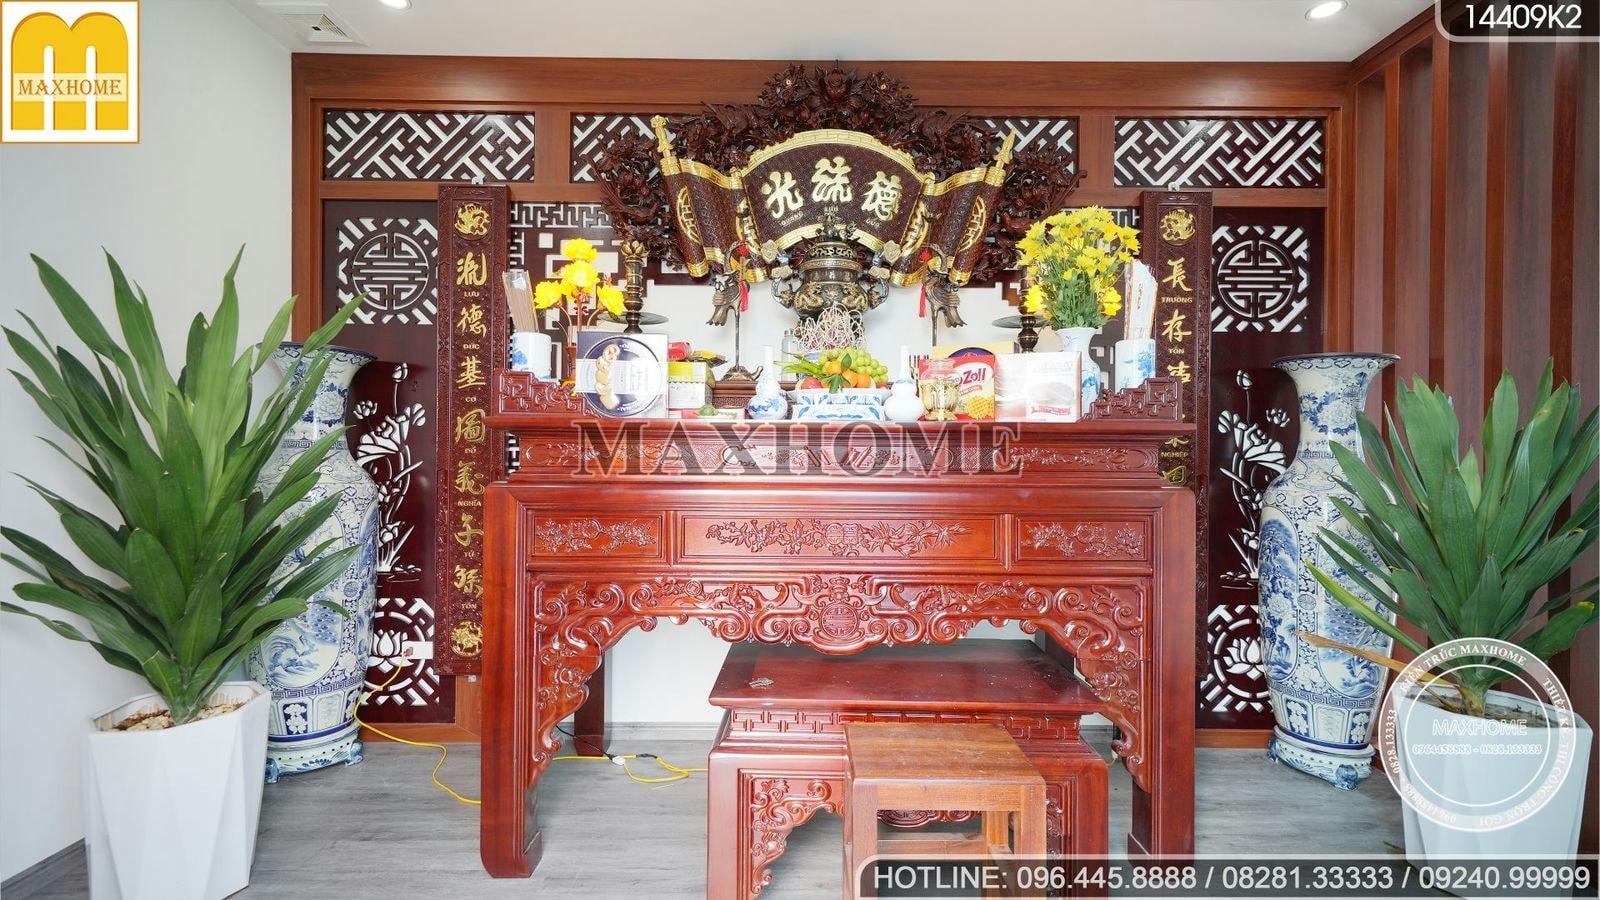 SIÊU PHẨM nhà HIỆN ĐẠI Maxhome thi công trọn gói tại Bắc Giang